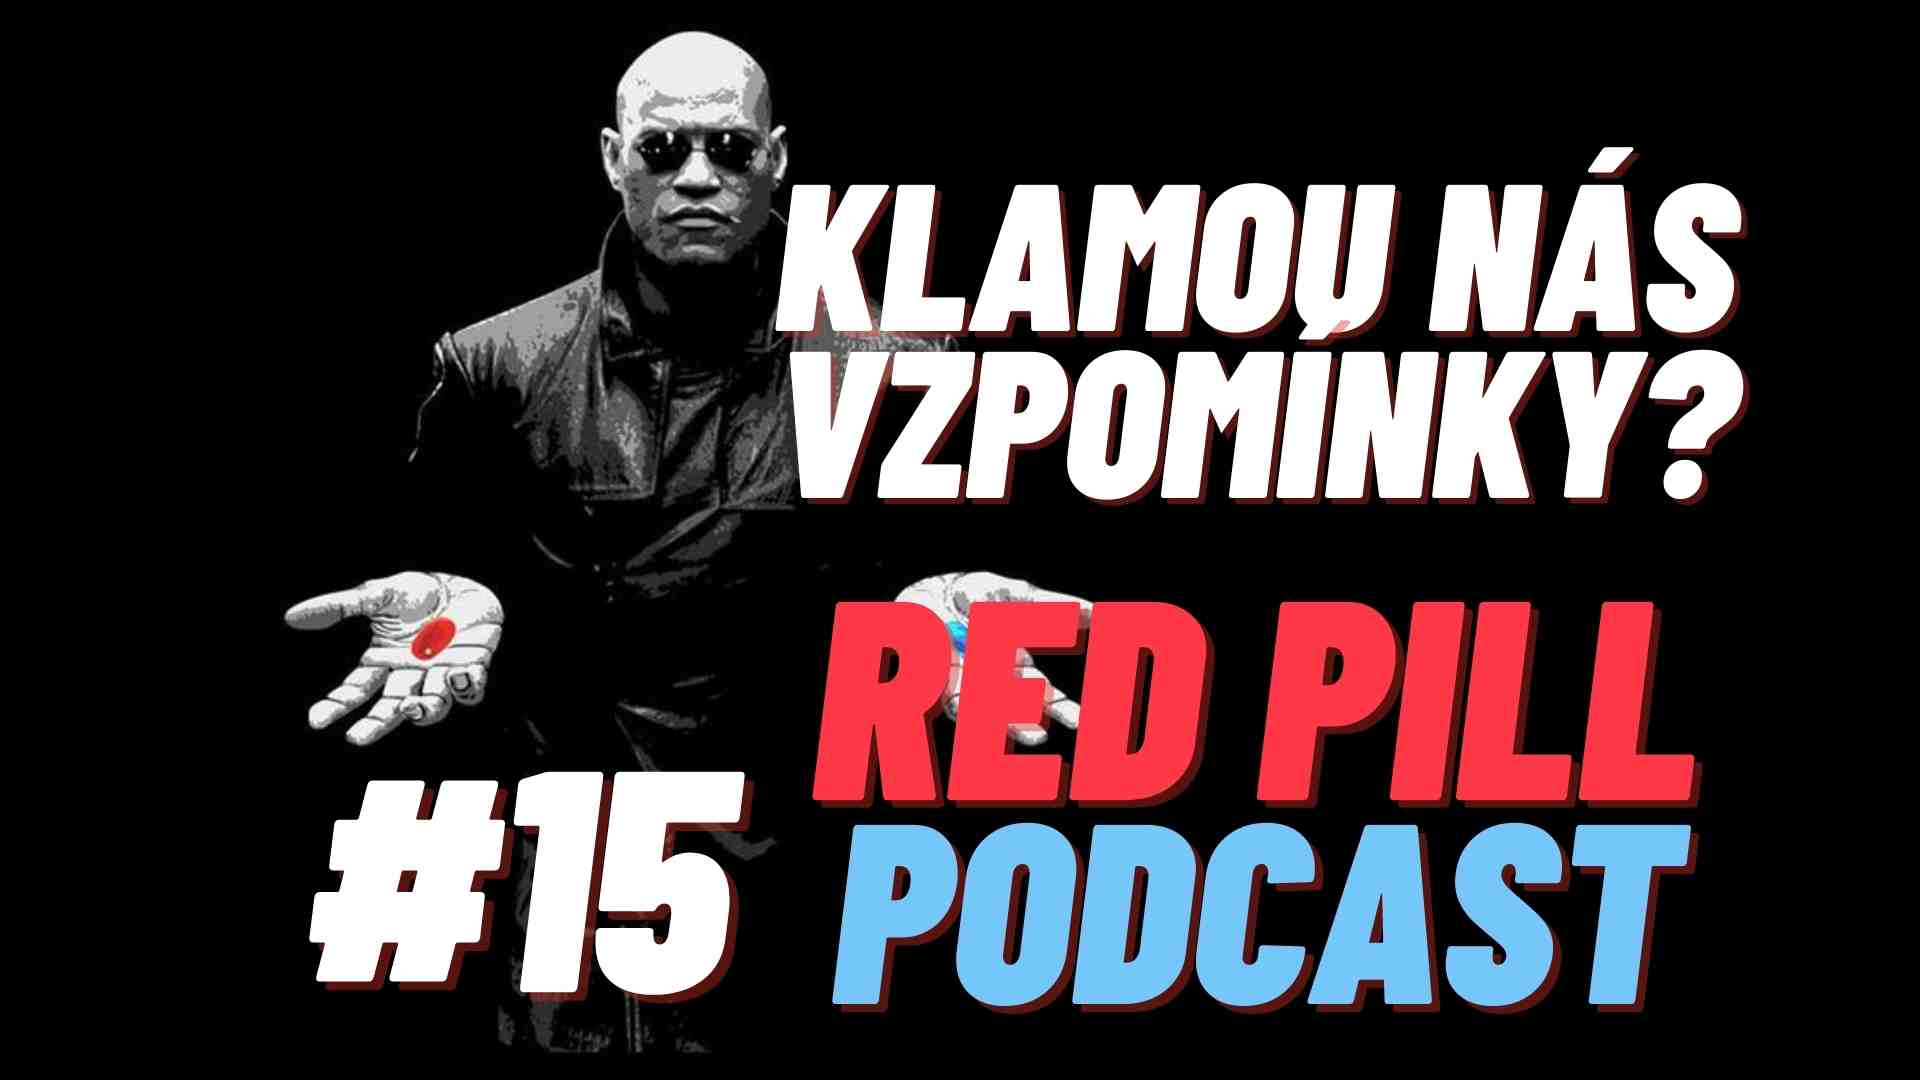 RED PILL Klamou nás vzpomínky podcast